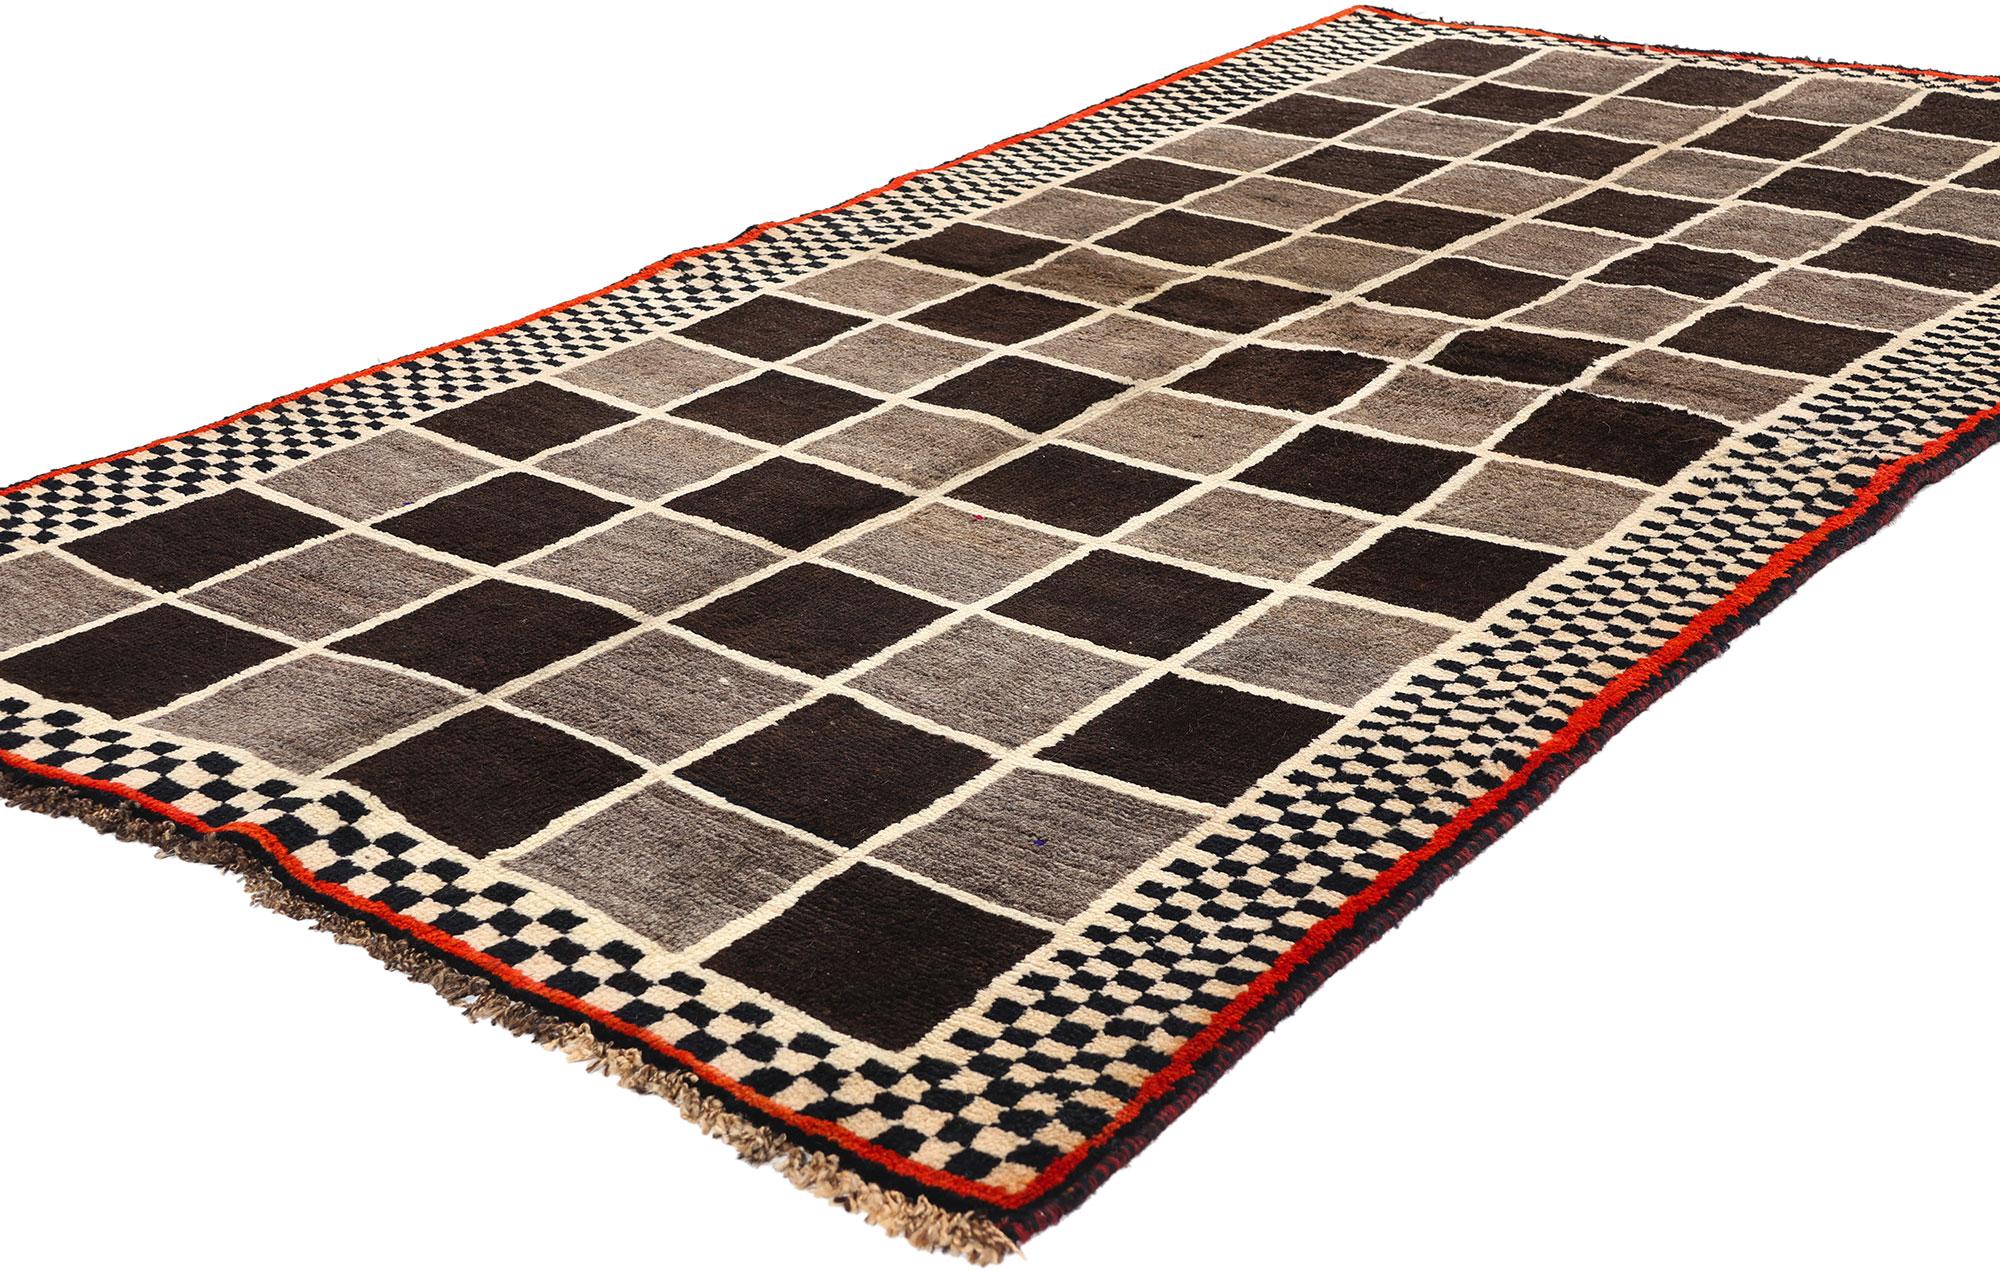 61071 Tapis persan vintage Gabbeh avec design en damier, 03'10 x 07'03. Les tapis persans Gabbeh aux tons neutres représentent un style traditionnel connu pour sa simplicité, ses poils épais et sa palette de couleurs terreuses, comprenant